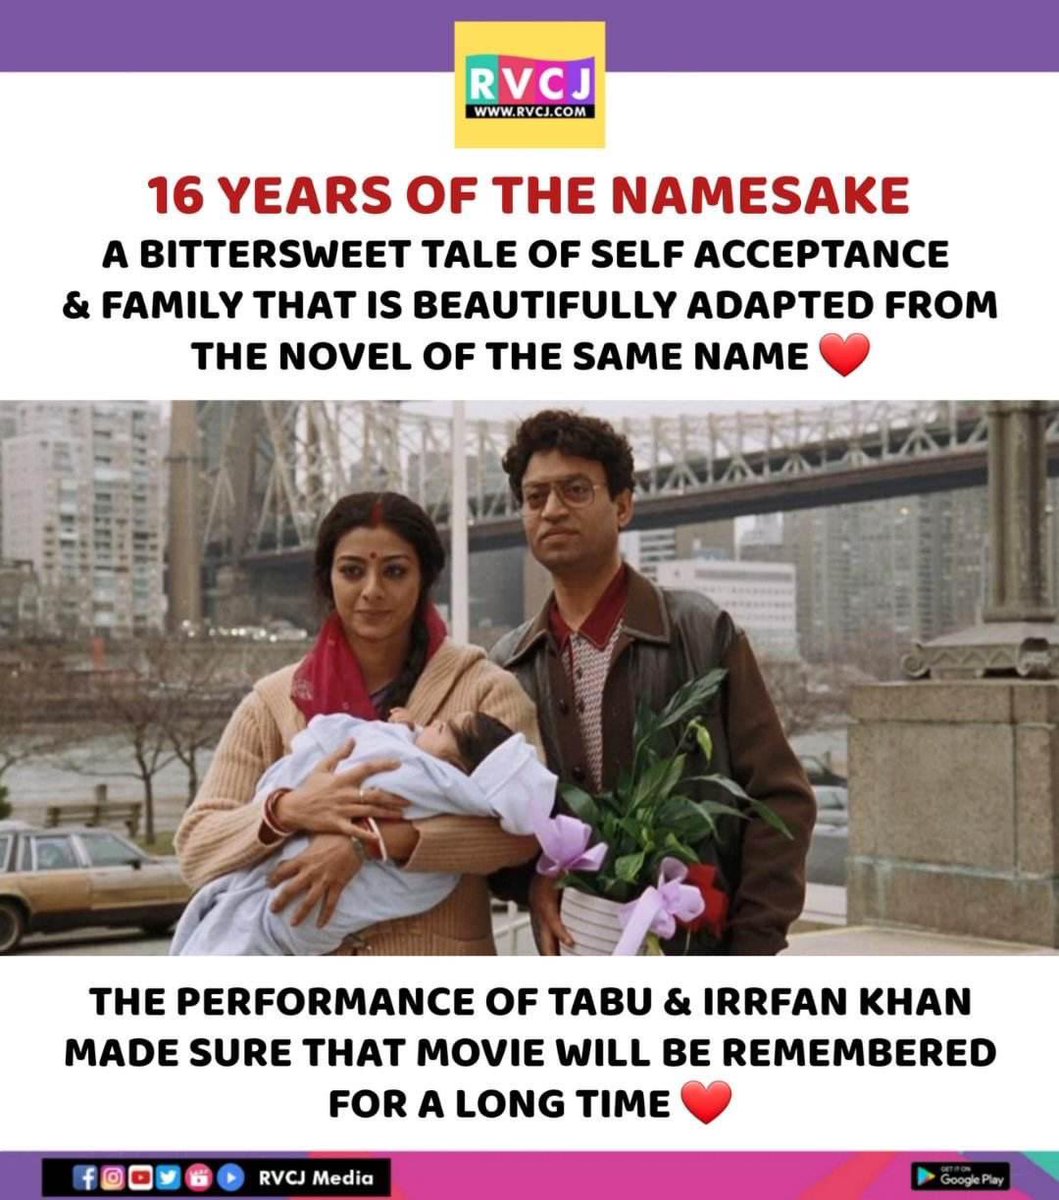 16 Years of The Namesake!
#thenamesake #irrfankhan #tabu #bollywood #miranair #rvcjmovies